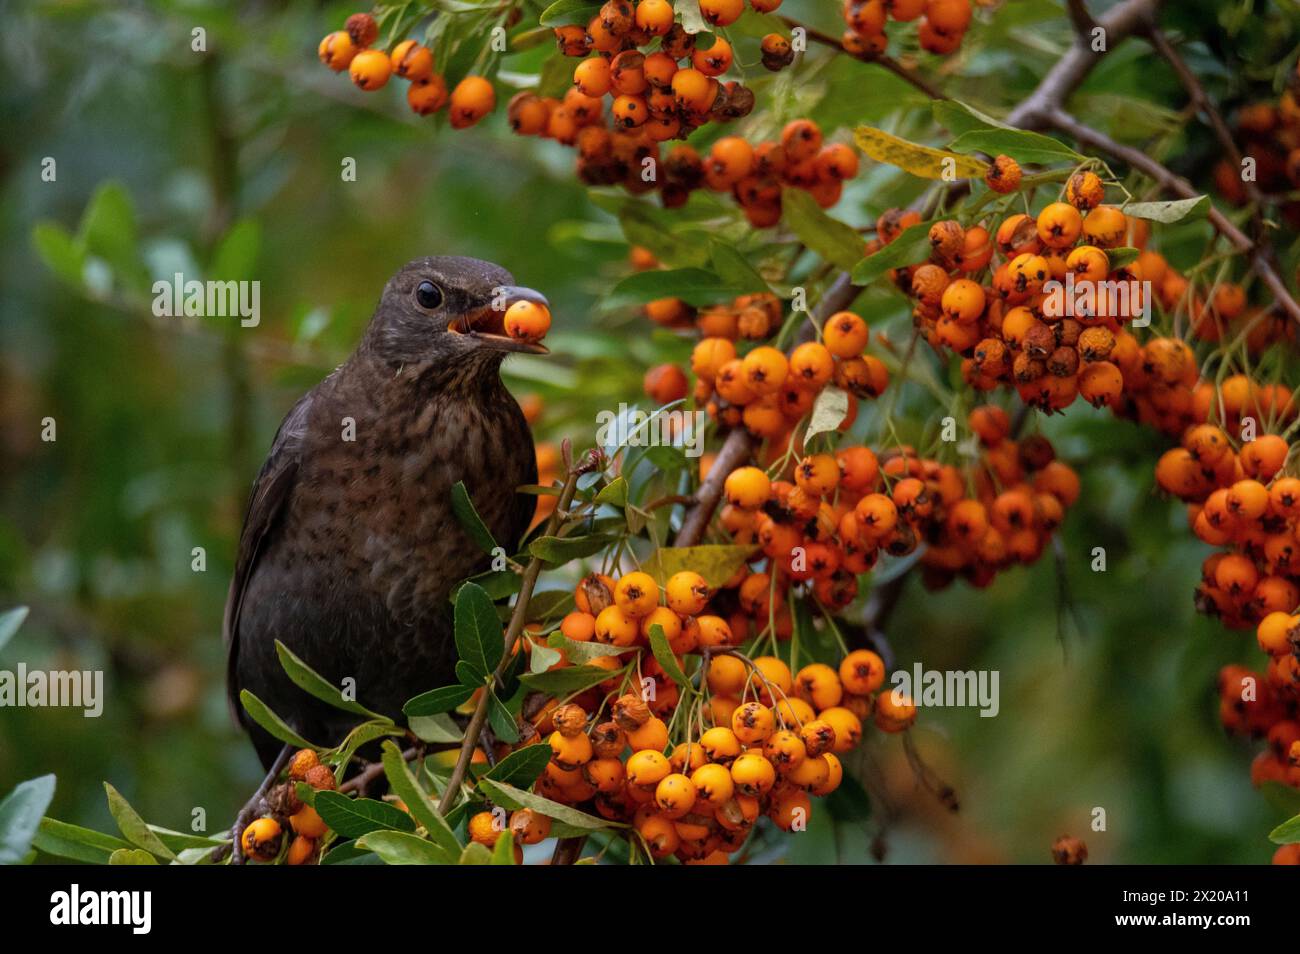 Blackbird eats sea buckthorn fruits in autumn, settlement area, Salzburg, Austria Stock Photo